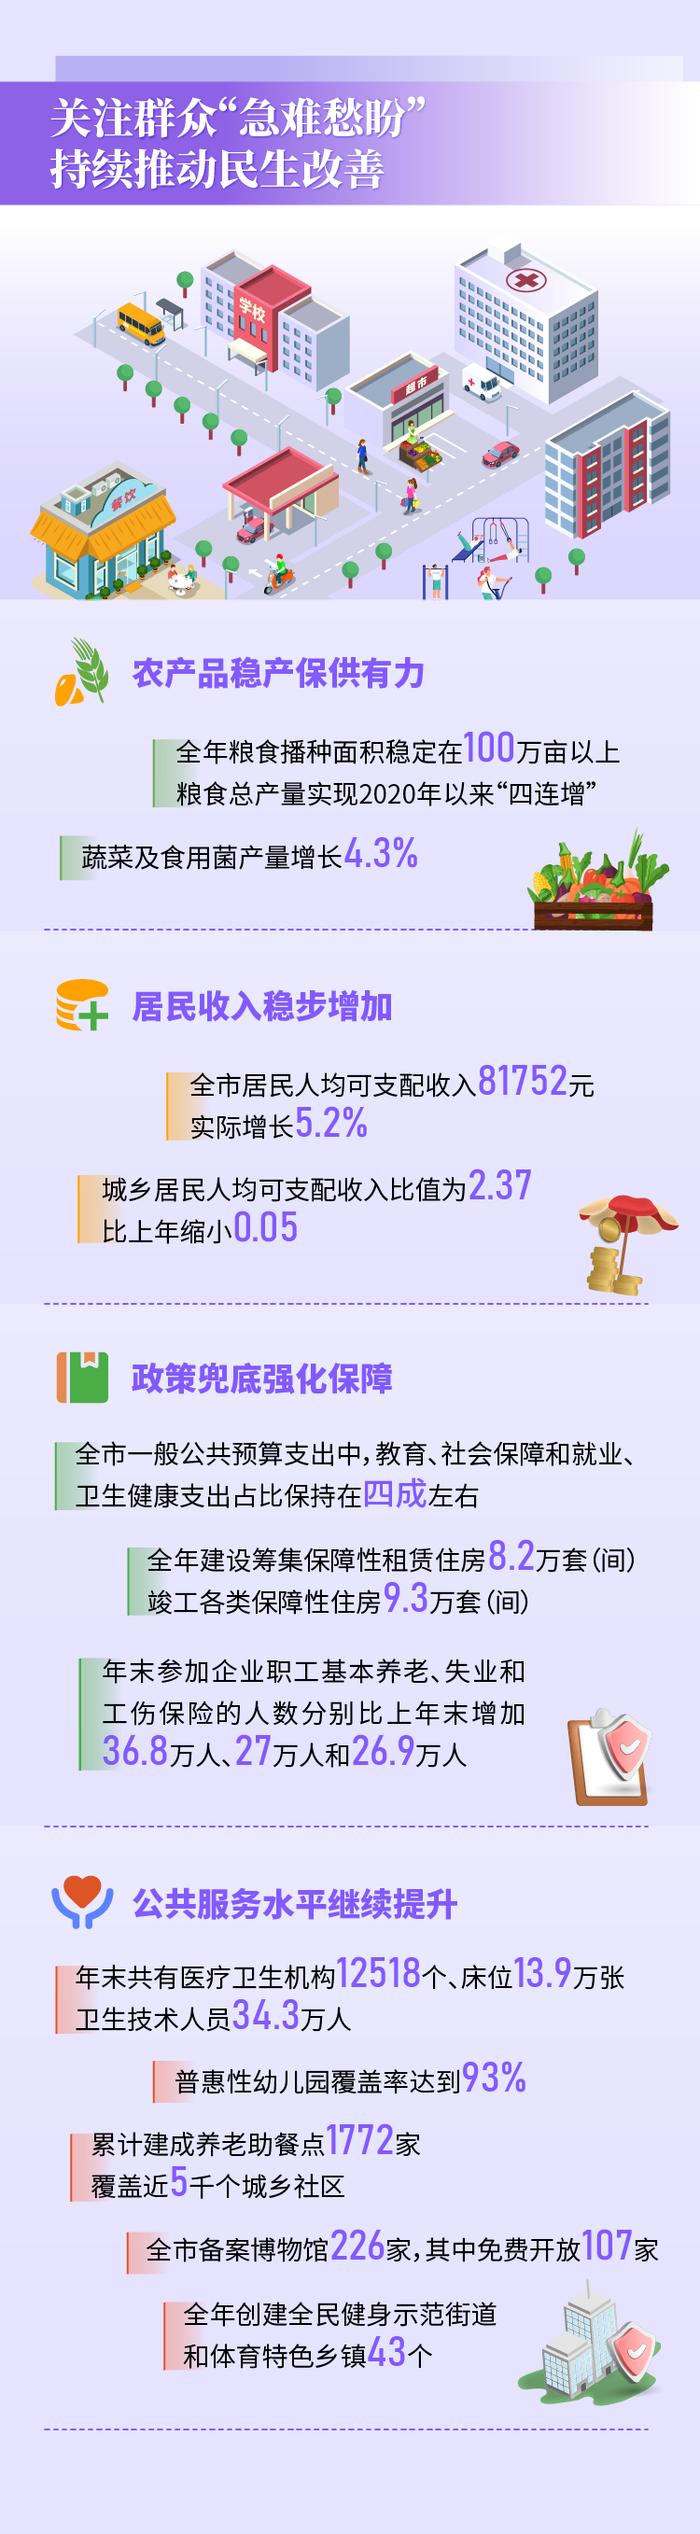 图解丨四组数据看北京市2023年国民经济和社会发展统计公报